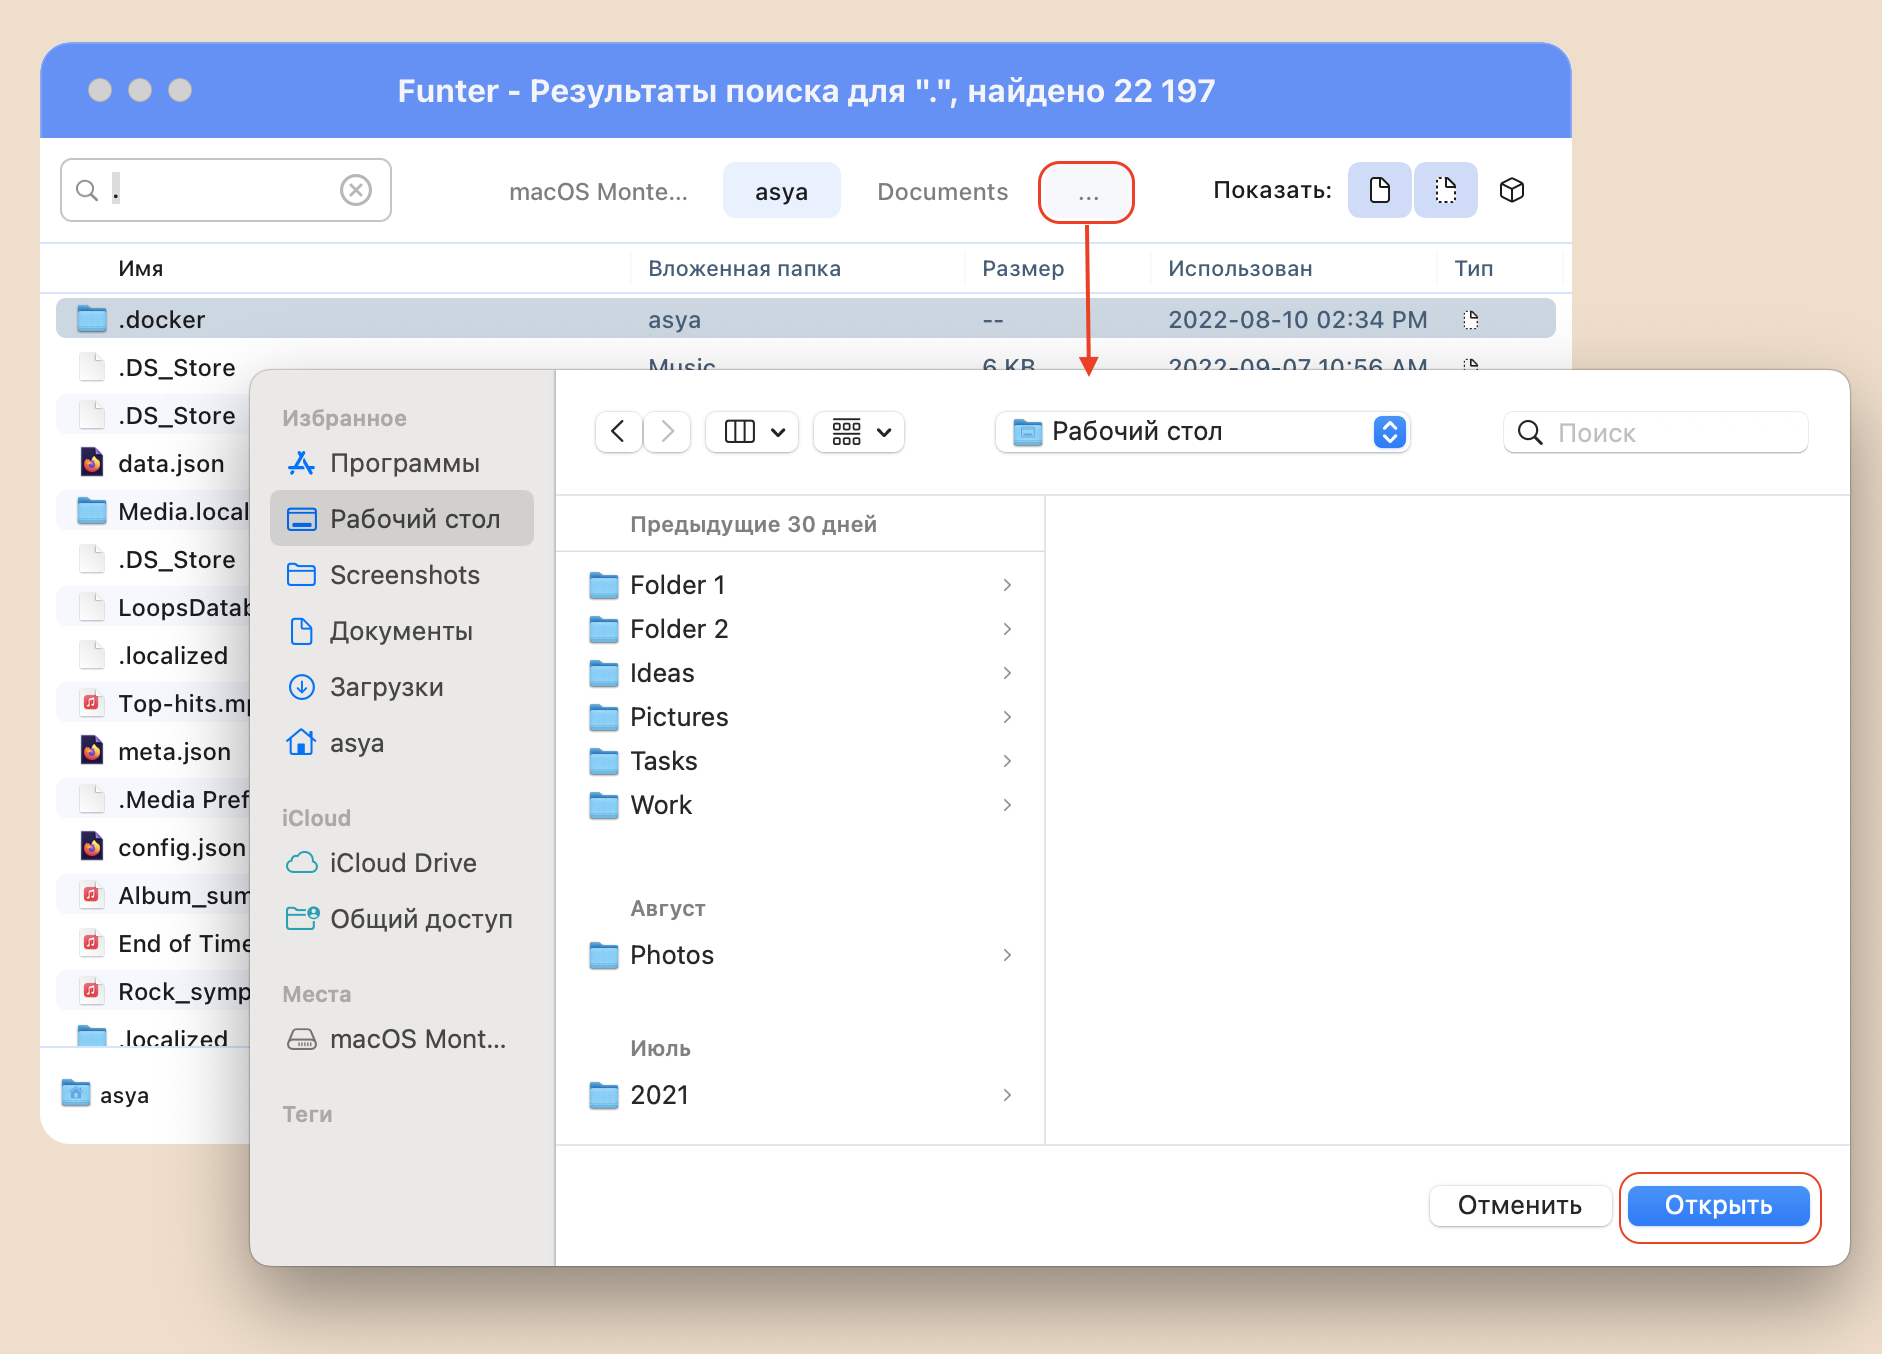 Окно приложения Funter - поиск файлов на внешнем диске